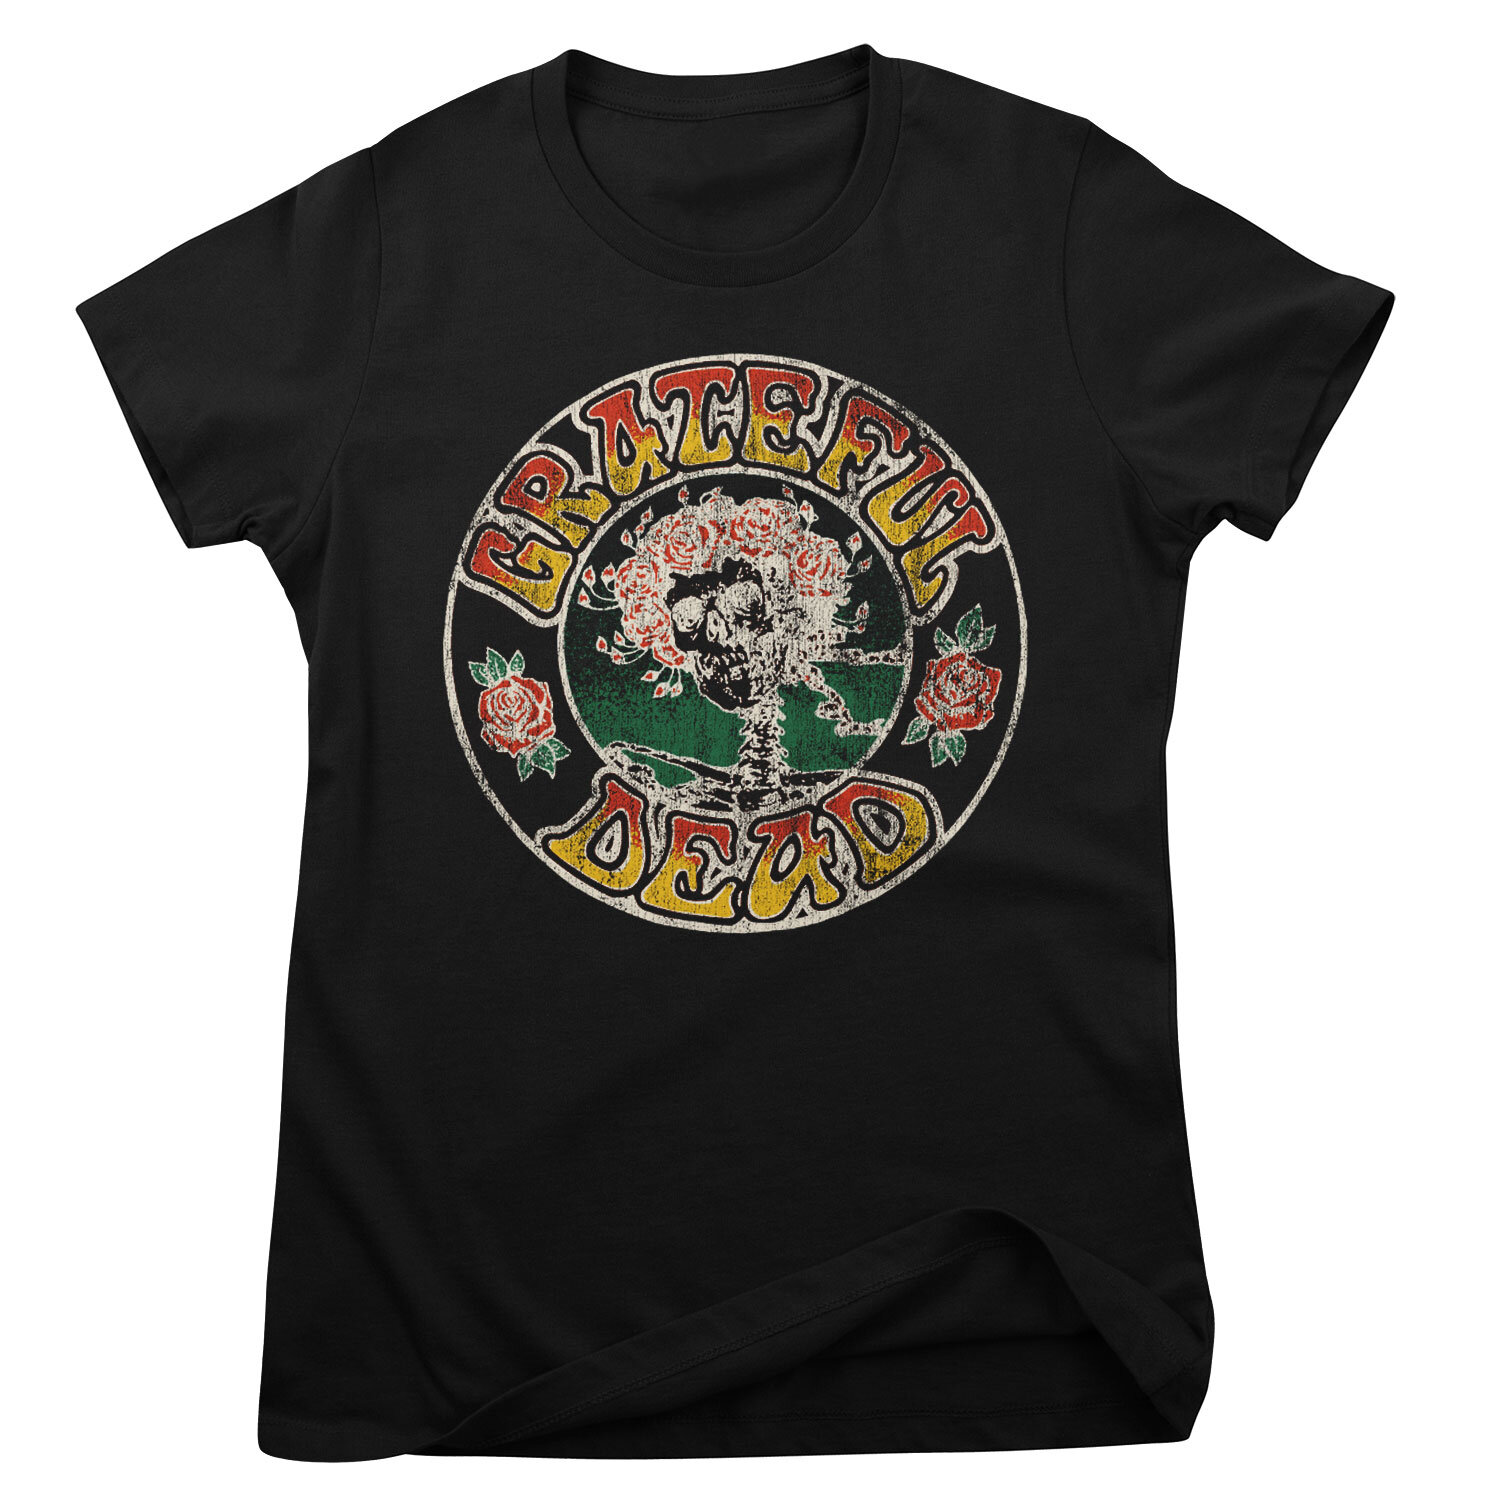 Grateful Dead - Skull & Roses Girly Tee